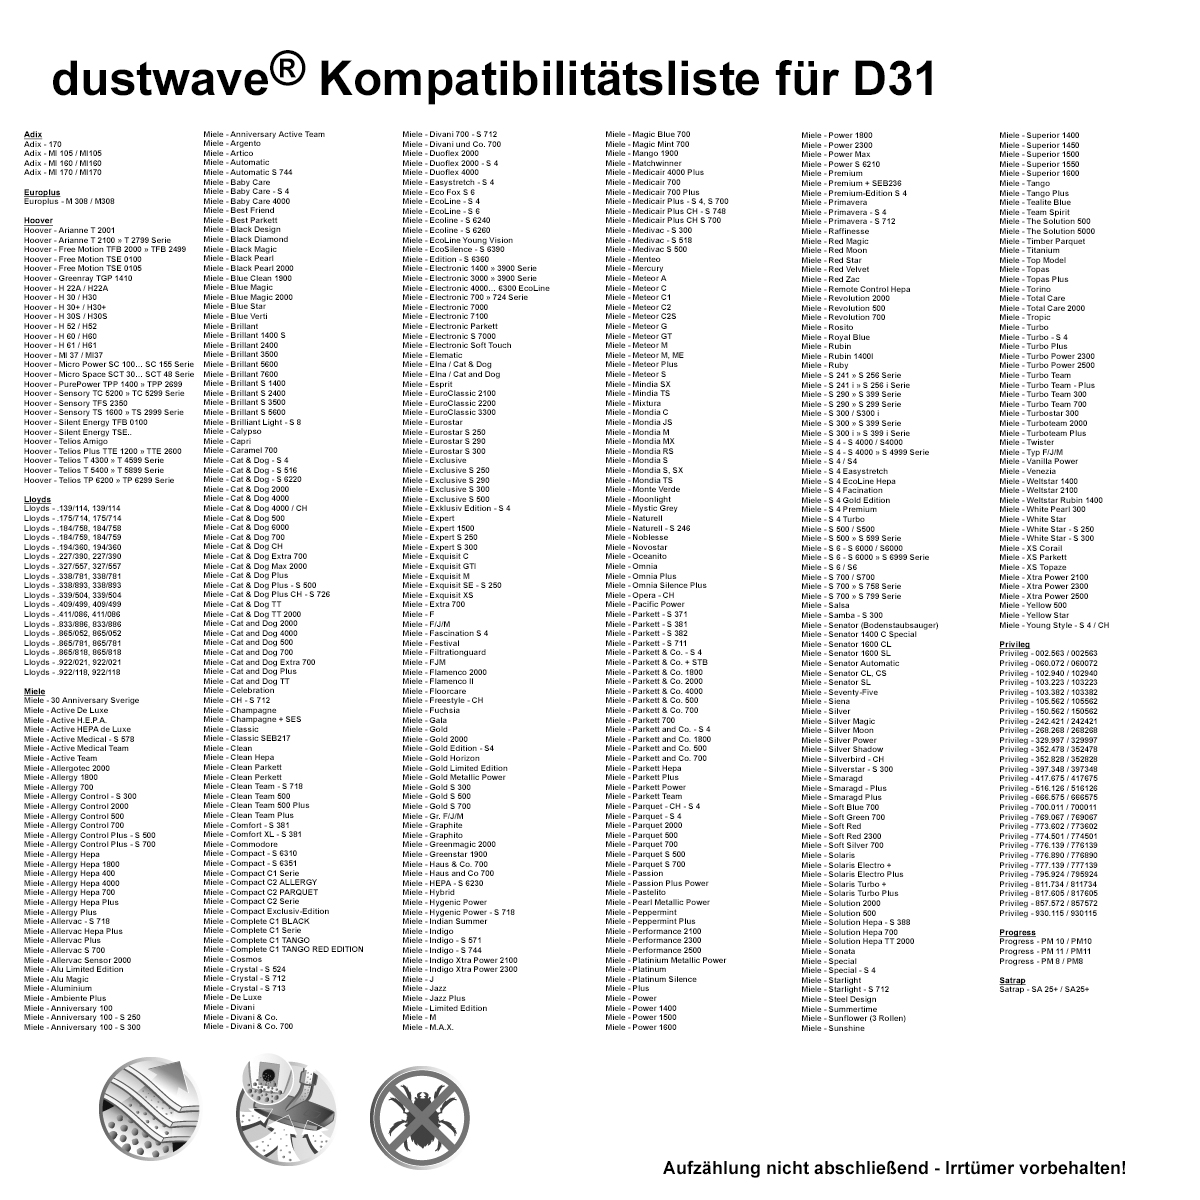 Dustwave® 10 Staubsaugerbeutel für Hoover TS2076 / TRTS2076 - hocheffizient, mehrlagiges Mikrovlies mit Hygieneverschluss - Made in Germany